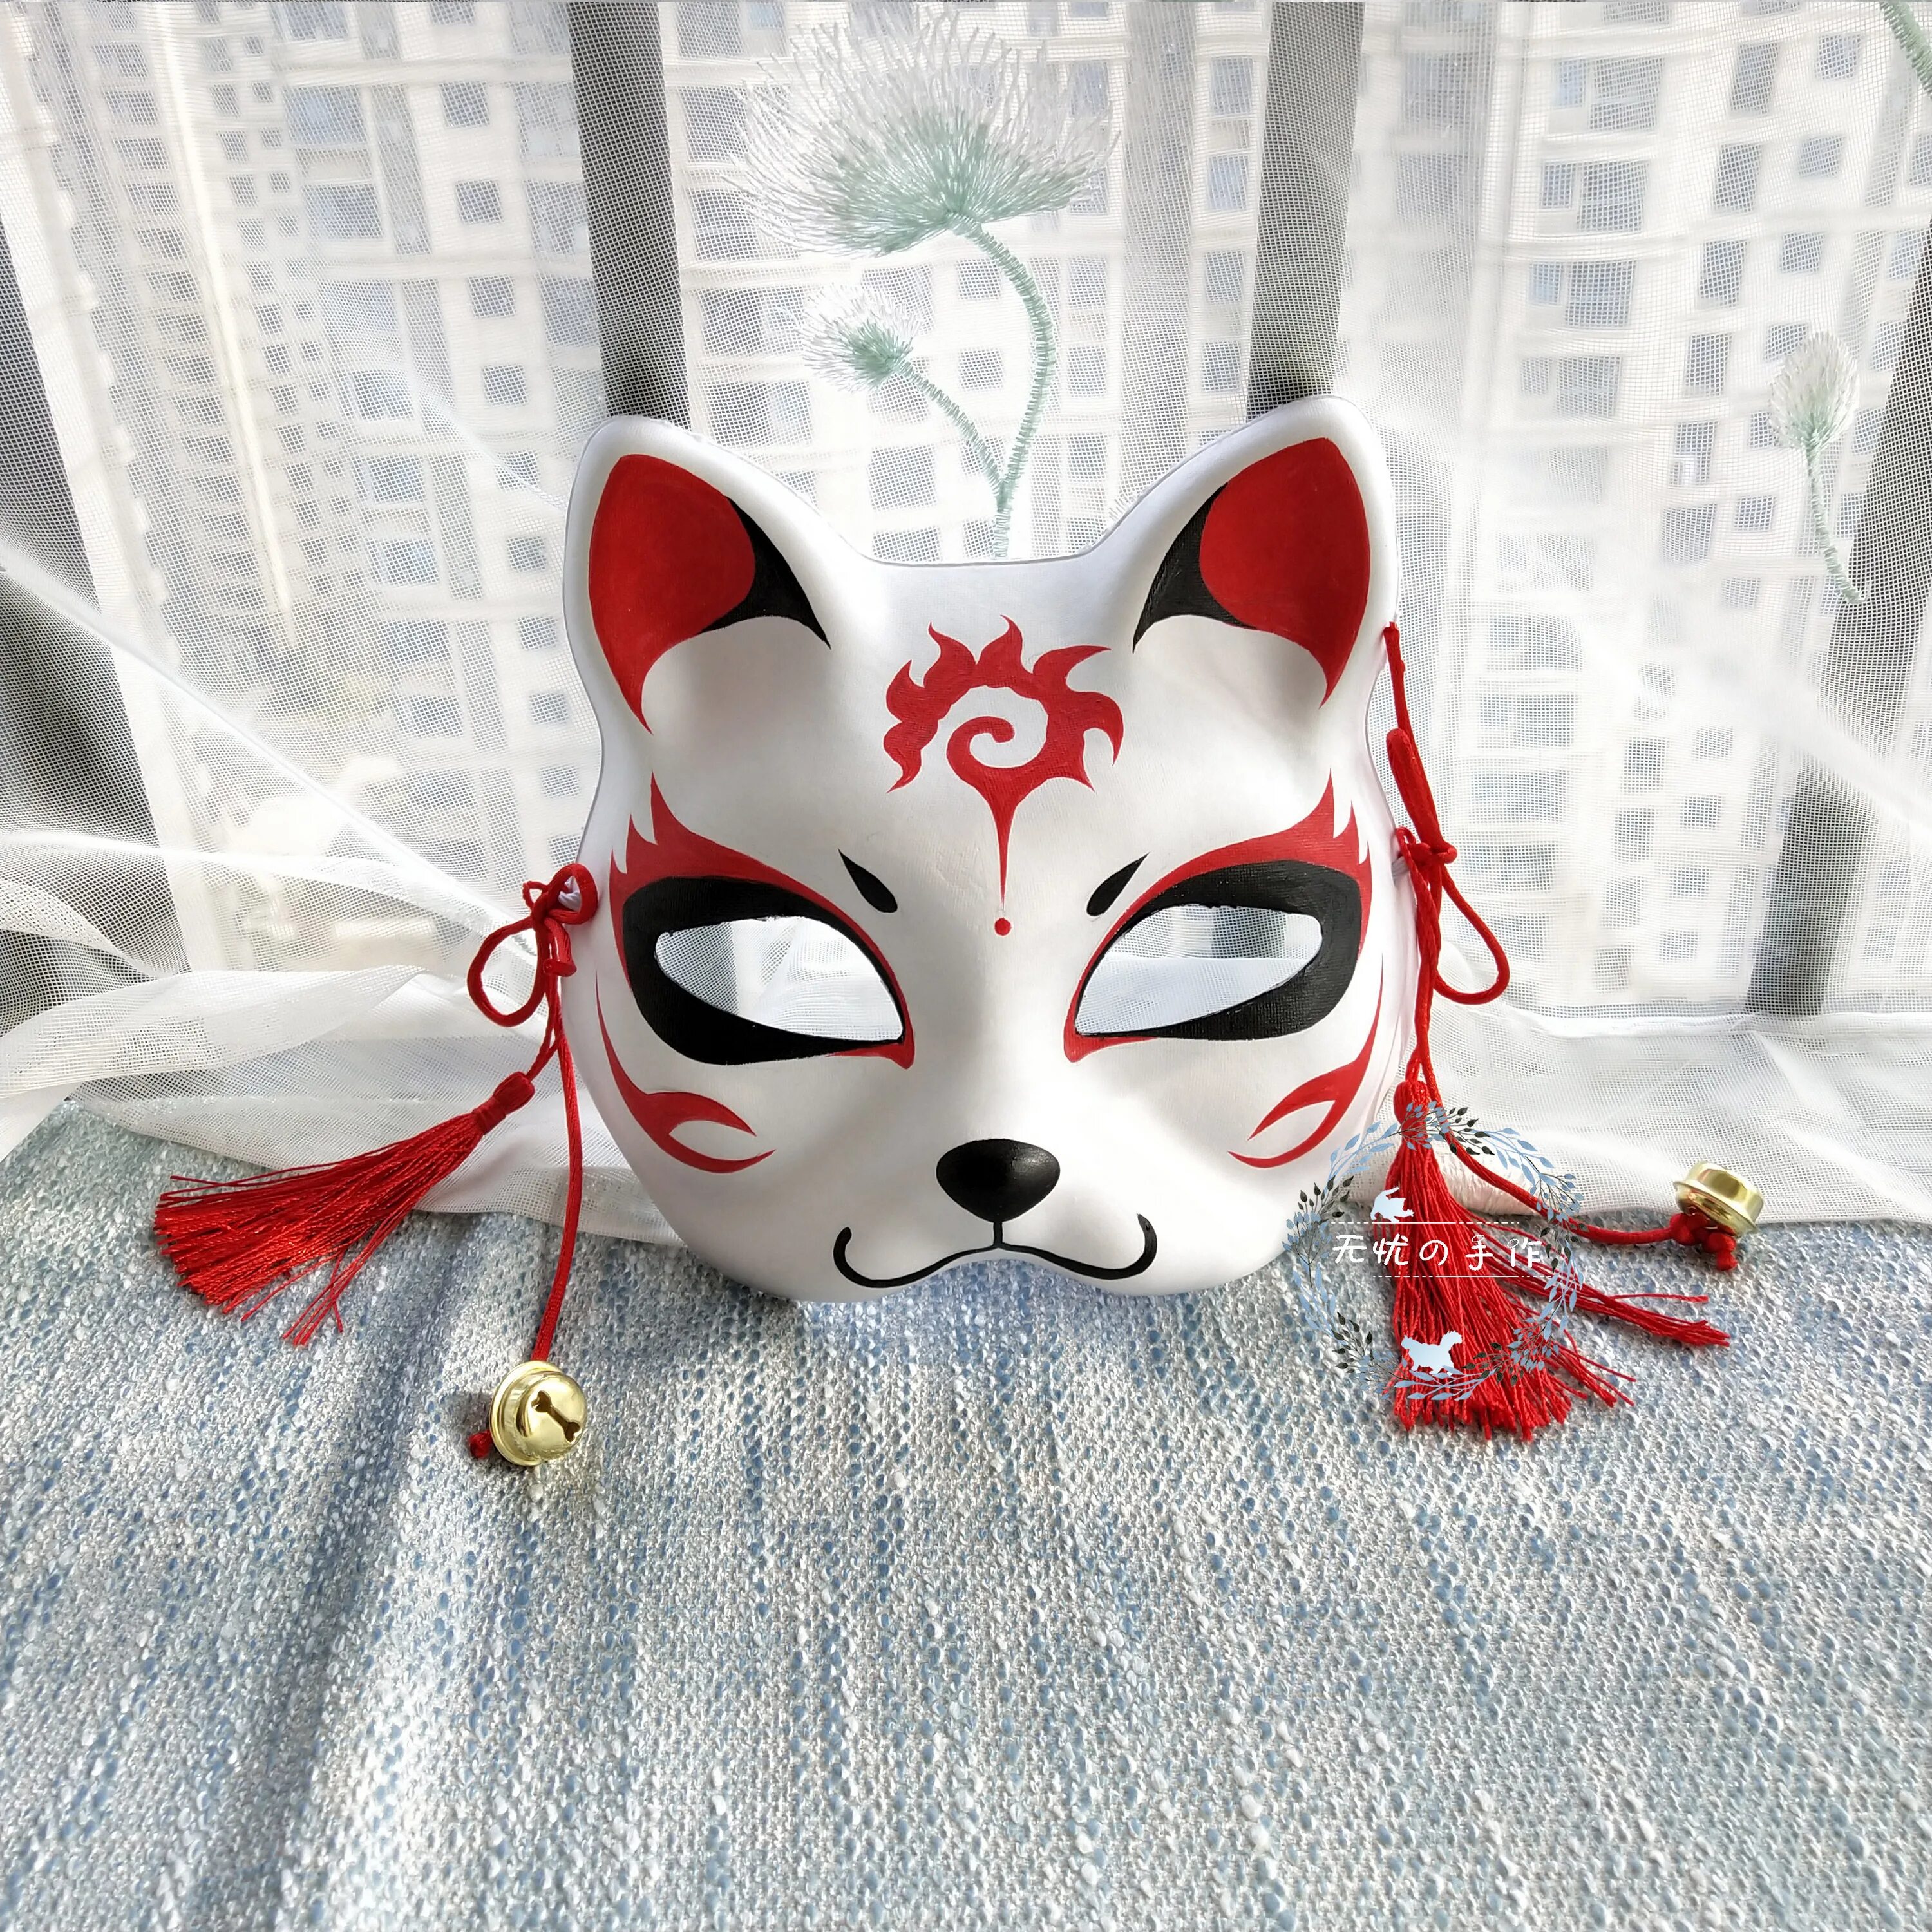 Японская маска кошки. Японская маска Кицунэ. Японская маска лисы Кицунэ. Японская лиса Кицунэ маска. Маска лисы Кицунэ.